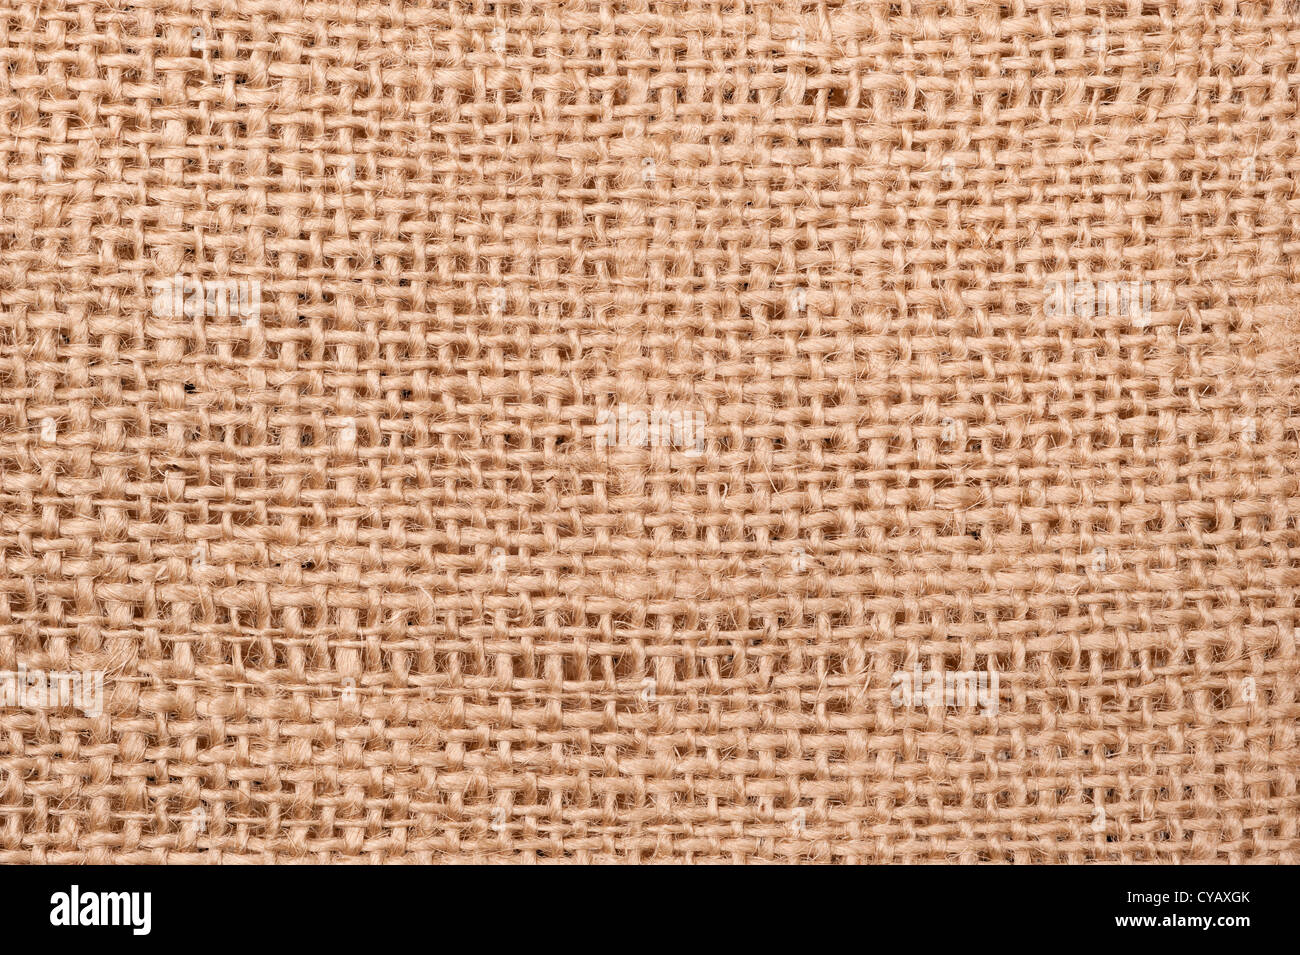 Cierre de un beige saco de arpillera que muestra los detalles de la fibra y patrón woven. Foto de stock